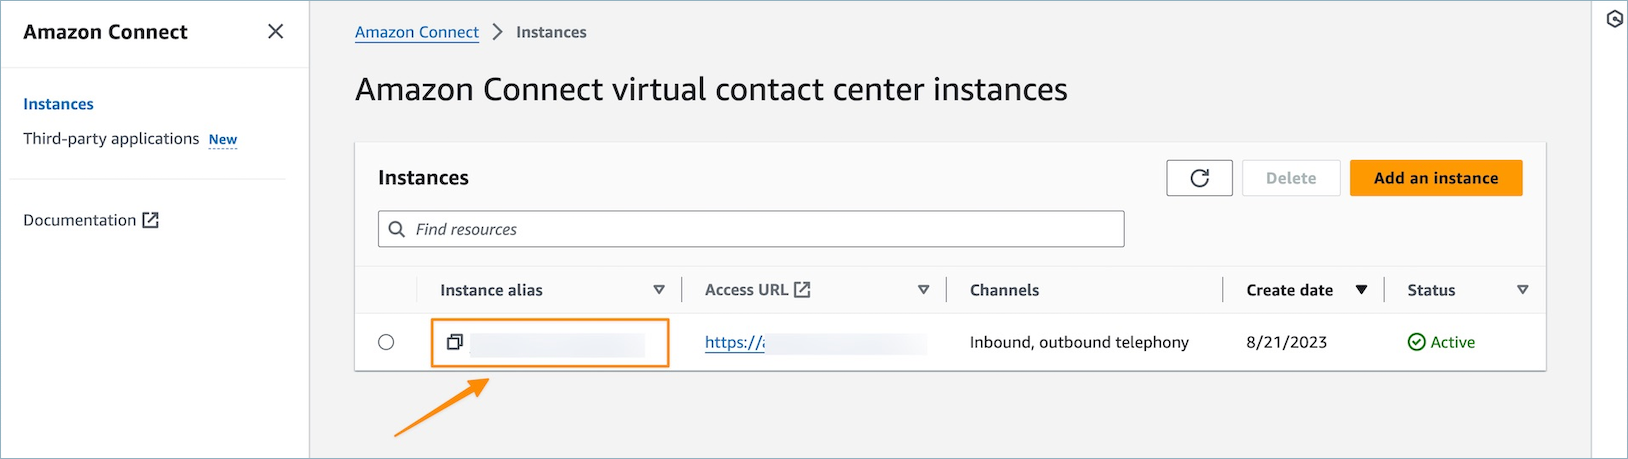 Amazon Connect 仮想コンタクトセンターのインスタンスページ。